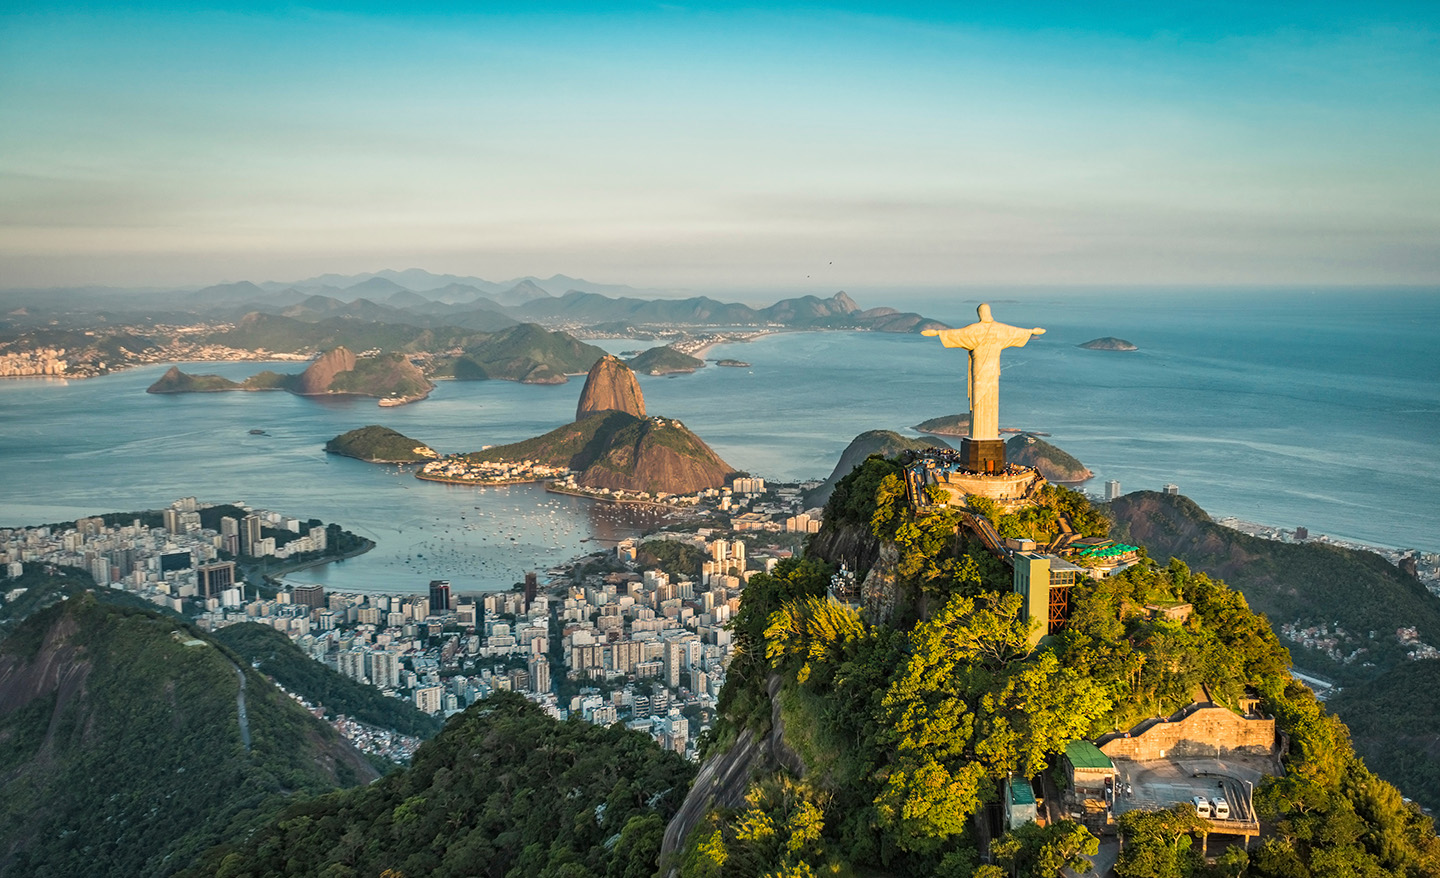 Vista da cidade do Rio de Janeiro